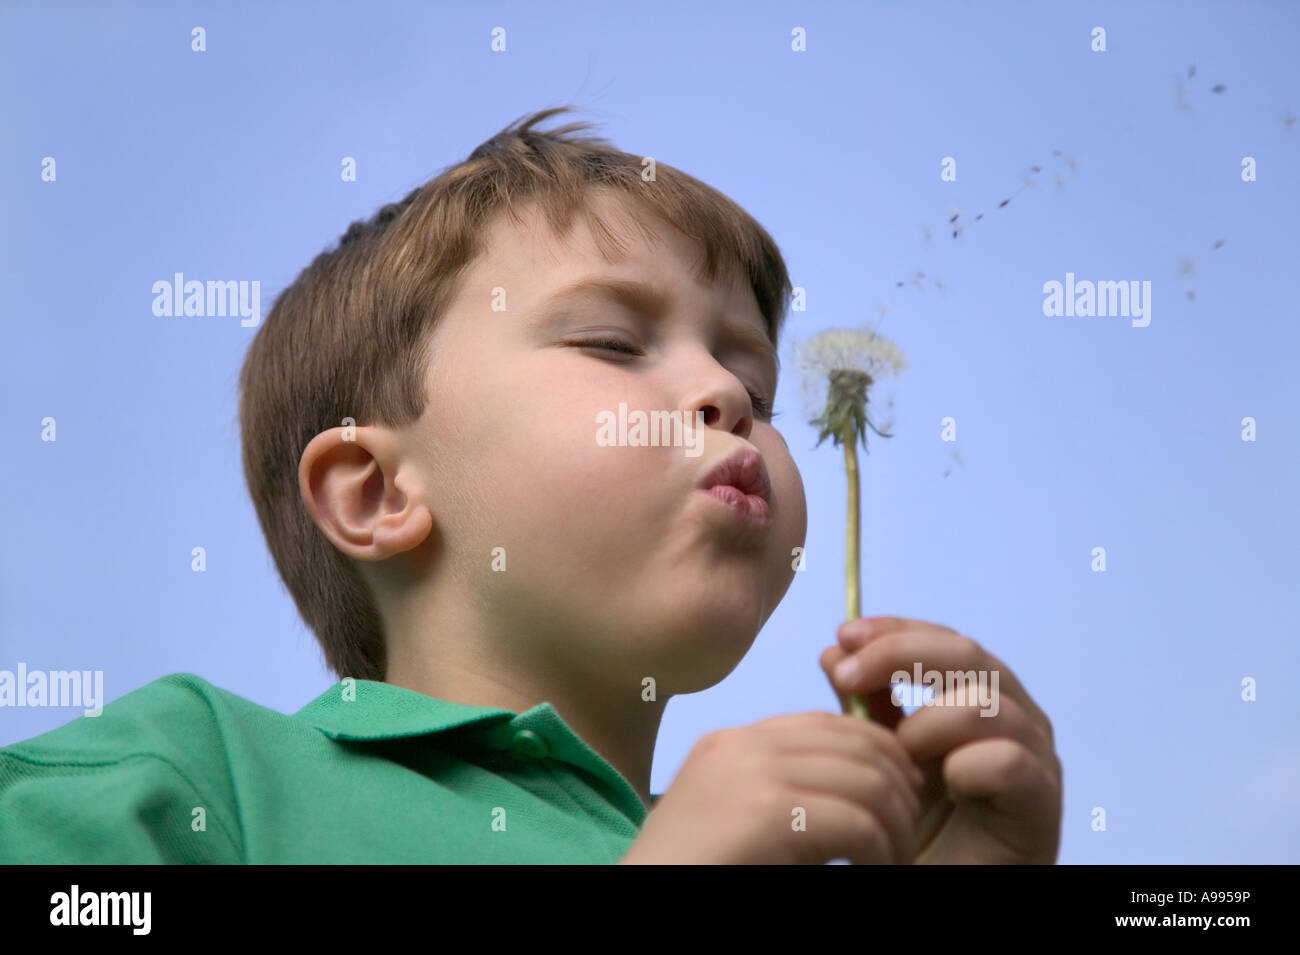 Boy blowing les graines d'une tête de pissenlit Banque D'Images